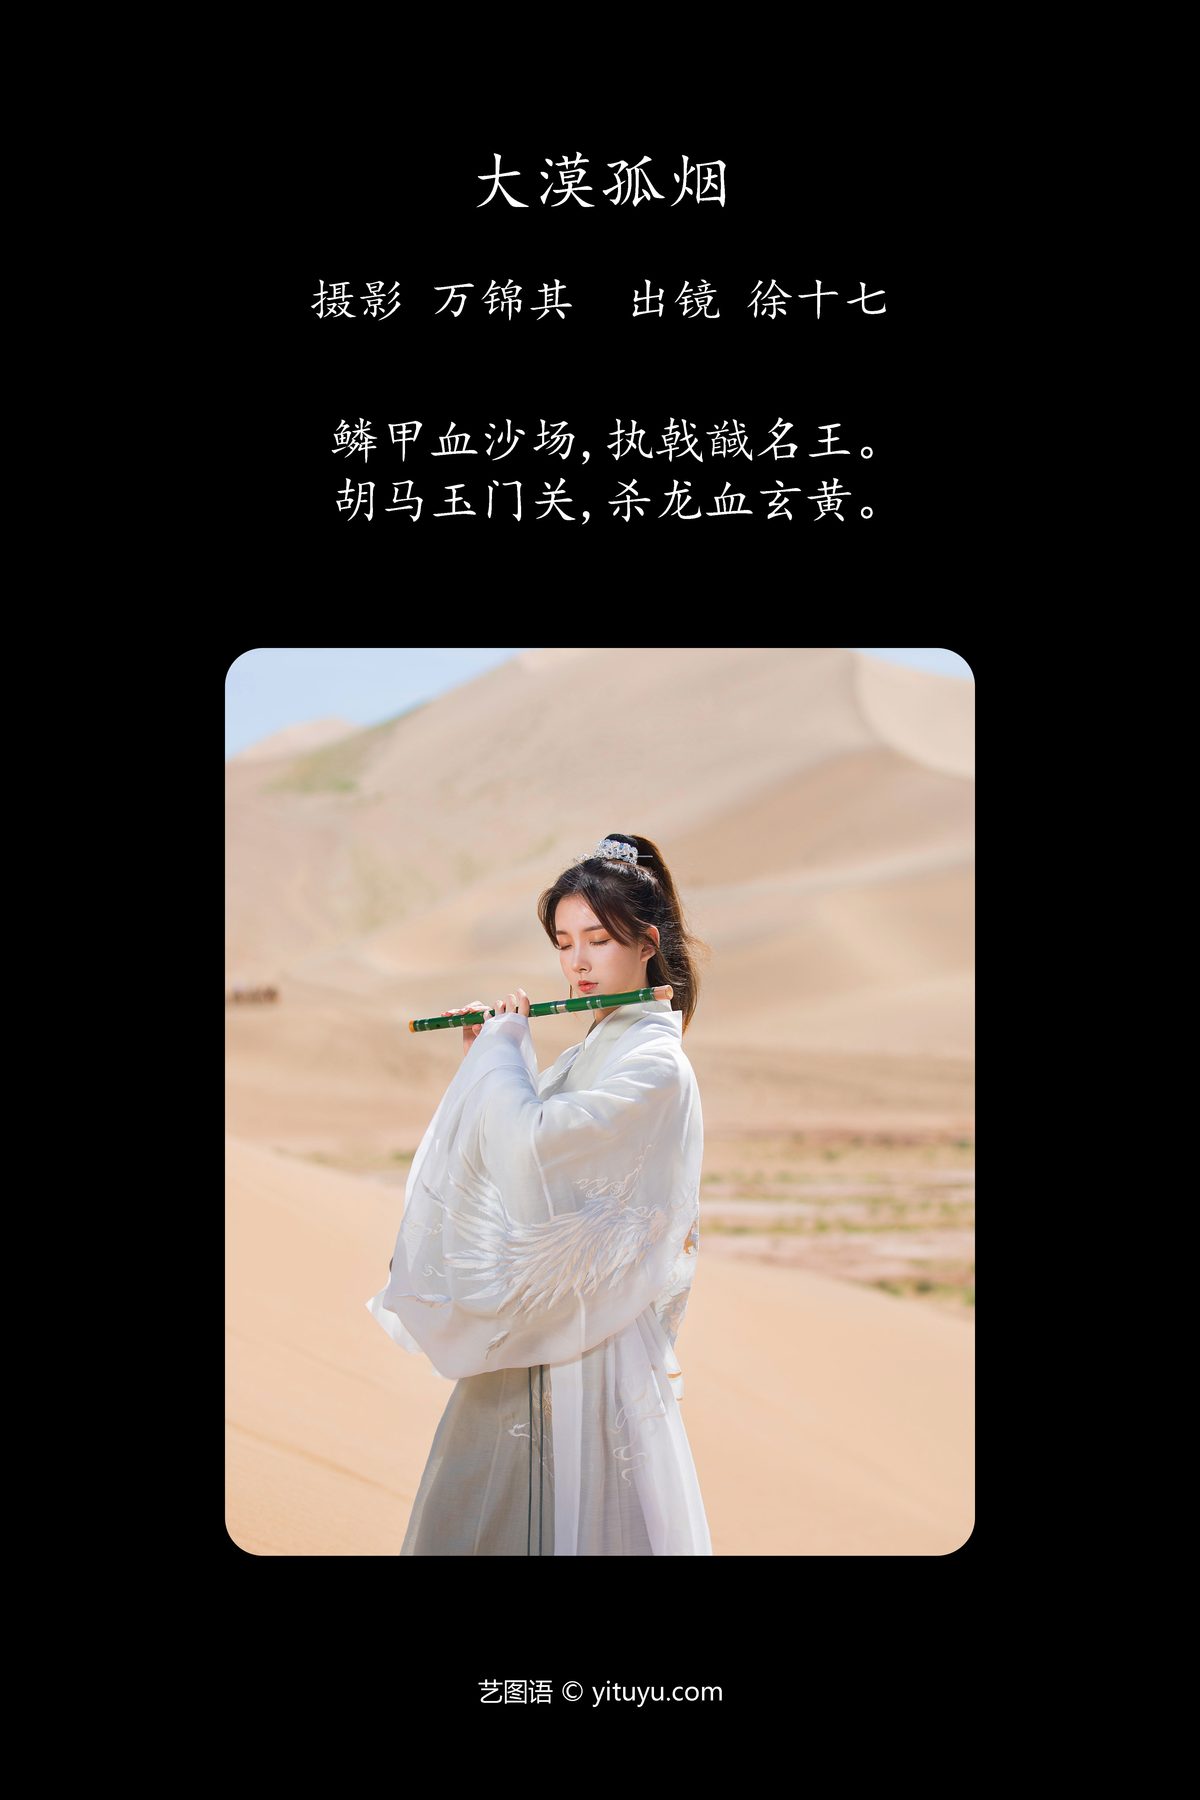 YiTuYu艺图语 Vol 5357 Xu Shi Qi Ma 0001 4126098674.jpg